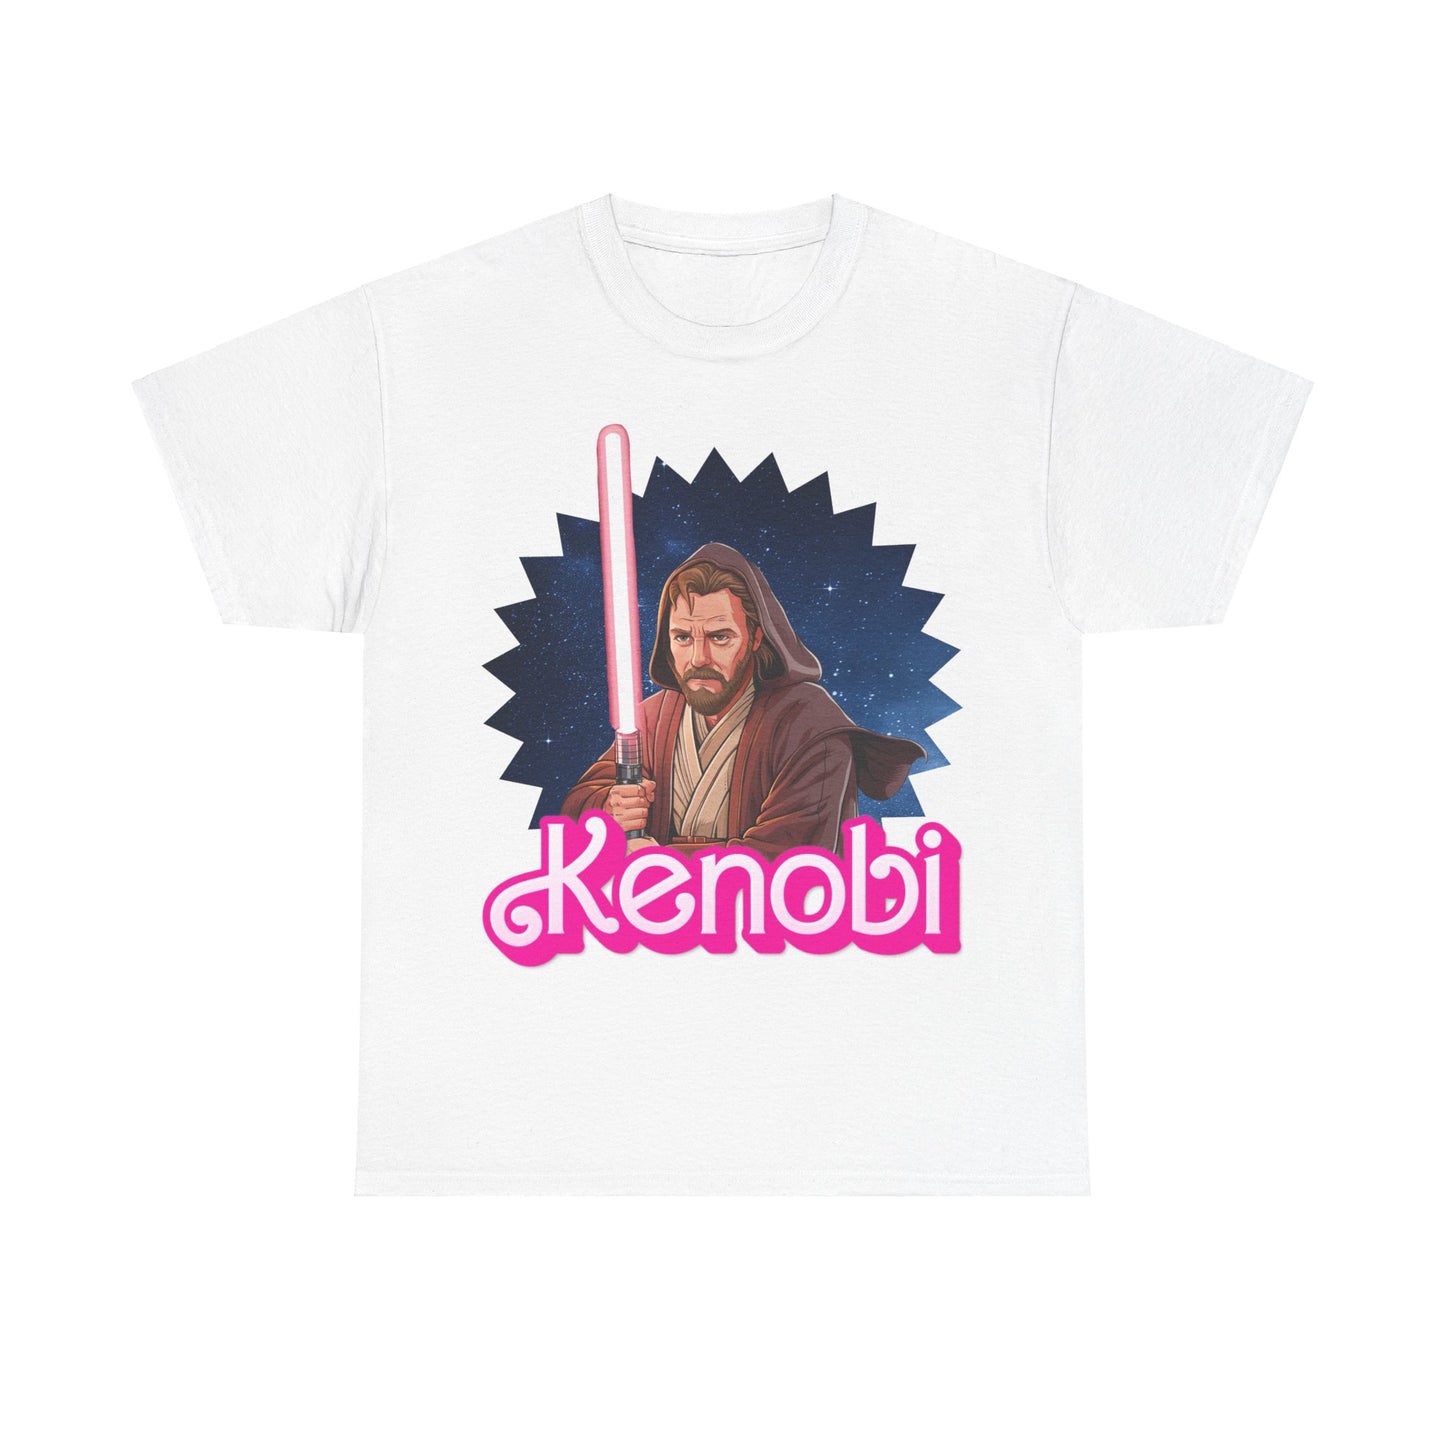 Obi-Wan Kenobi Ken Barbie Movie Star Wars Unisex Heavy Cotton Tee Next Cult Brand